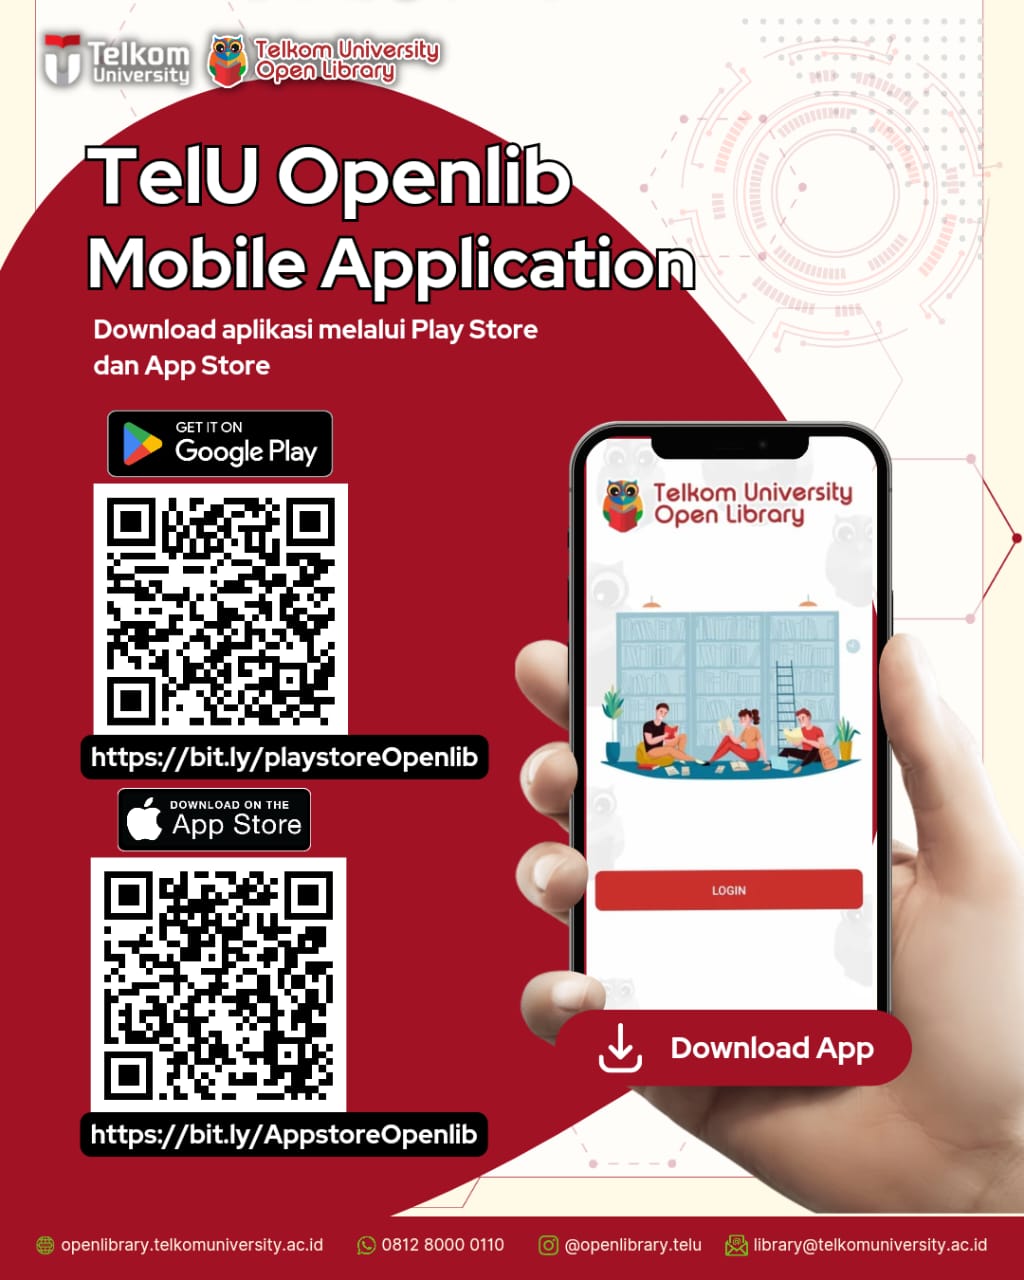 TelU Openlib Mobile Application